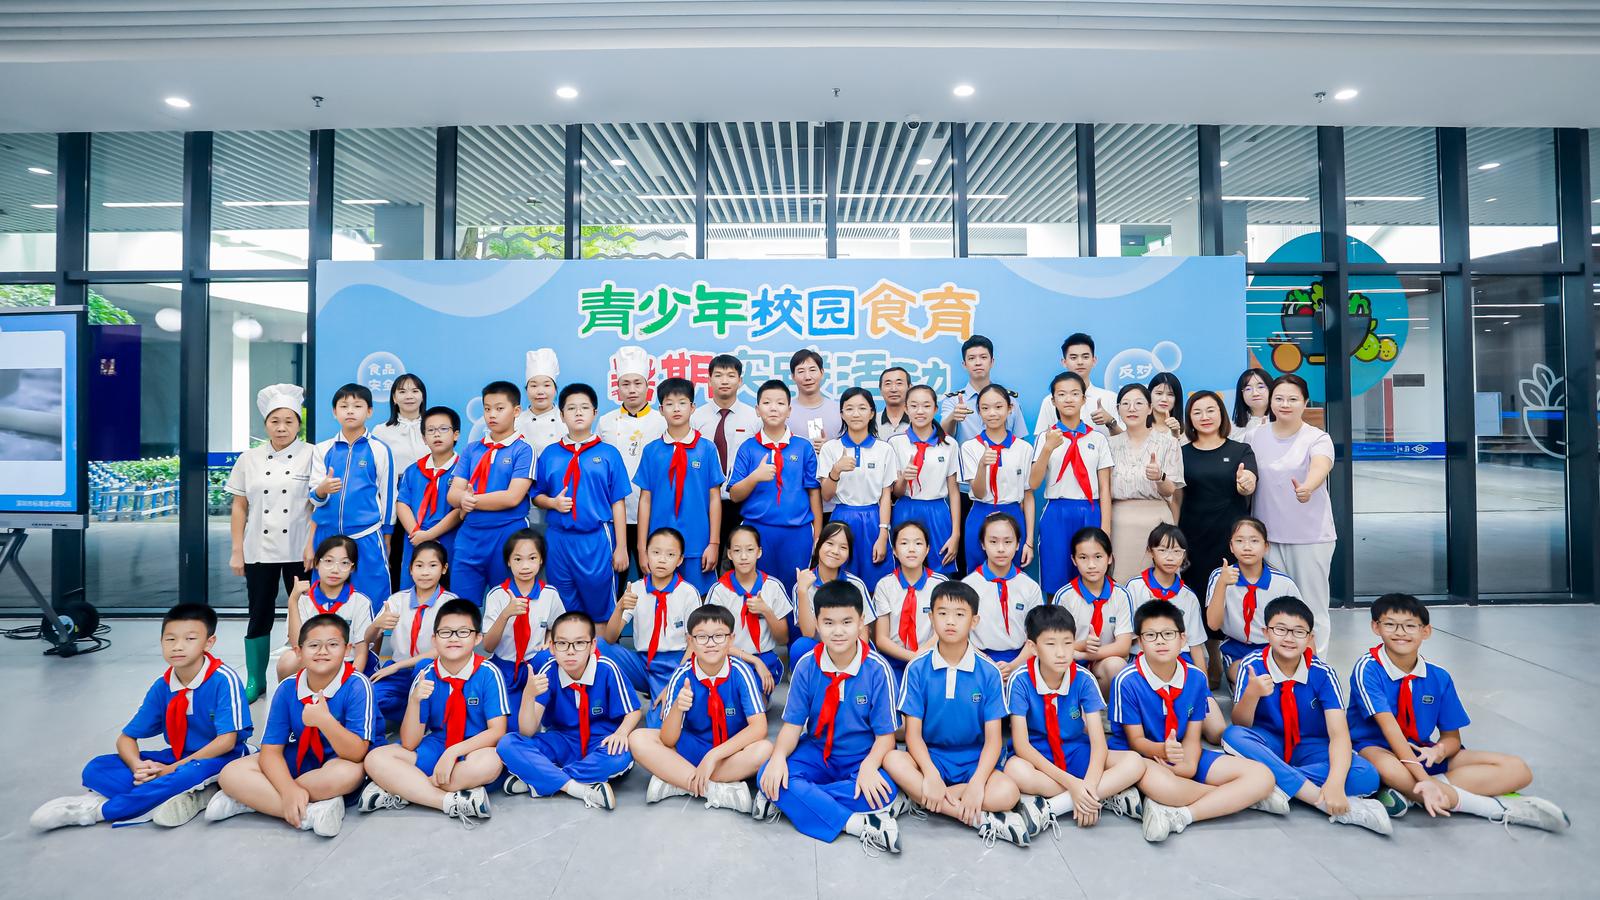 实践励心志 食育助成长 青少年校园食育暑期实践活动走进深圳实验光明学校